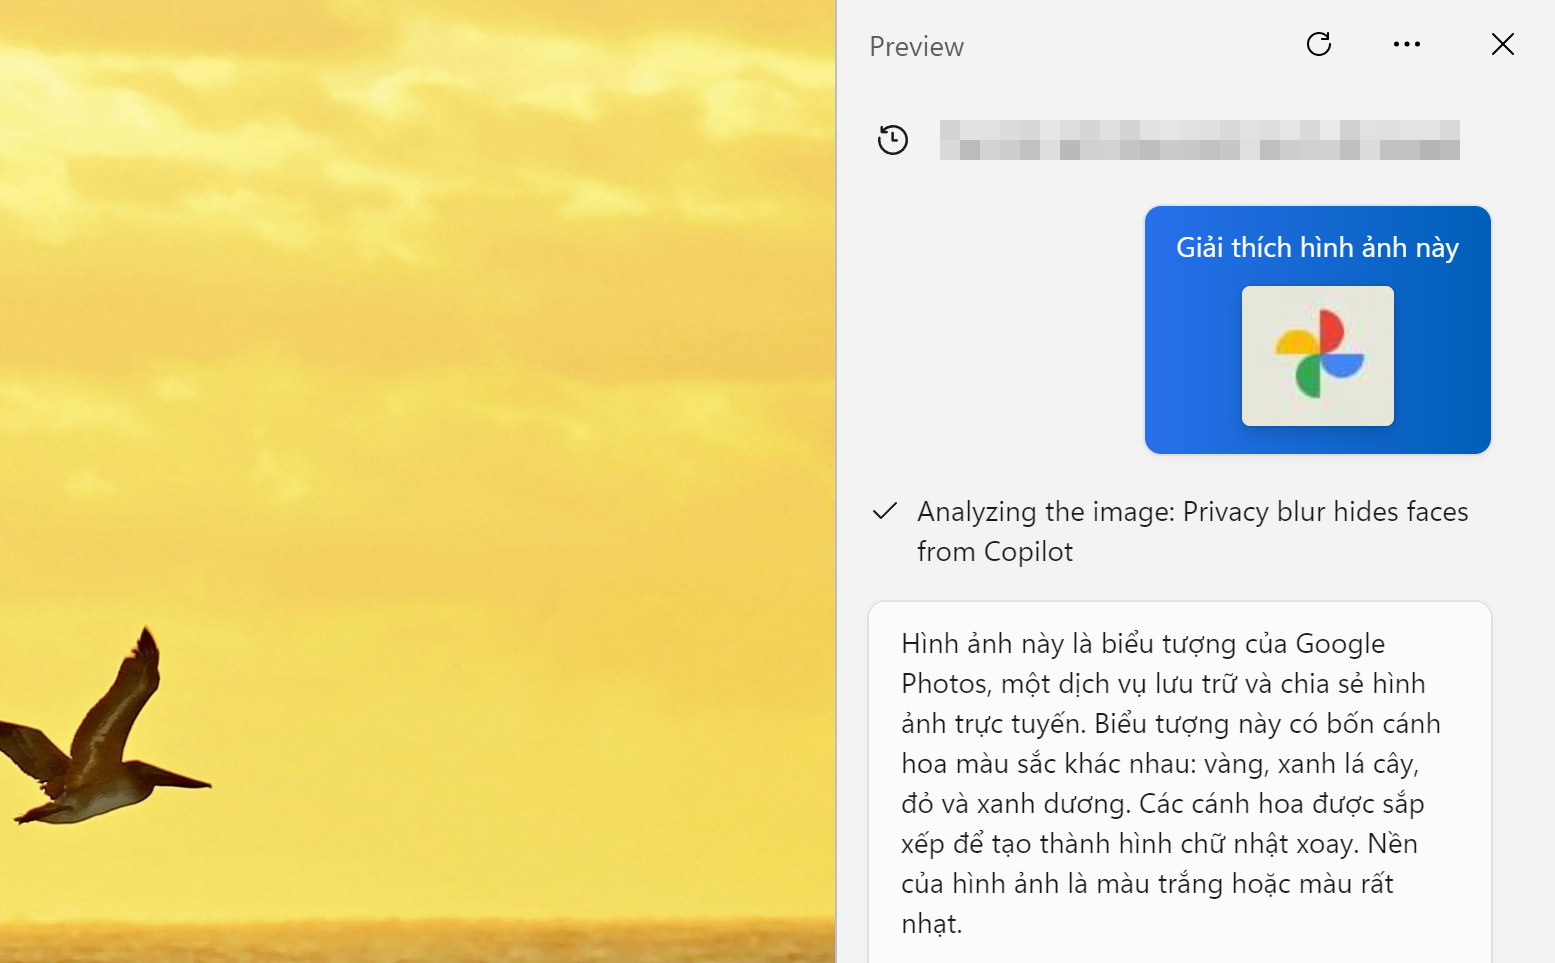 Windows Copilot giải thích nội dung bức ảnh bằng tiếng Việt, mời anh em thử